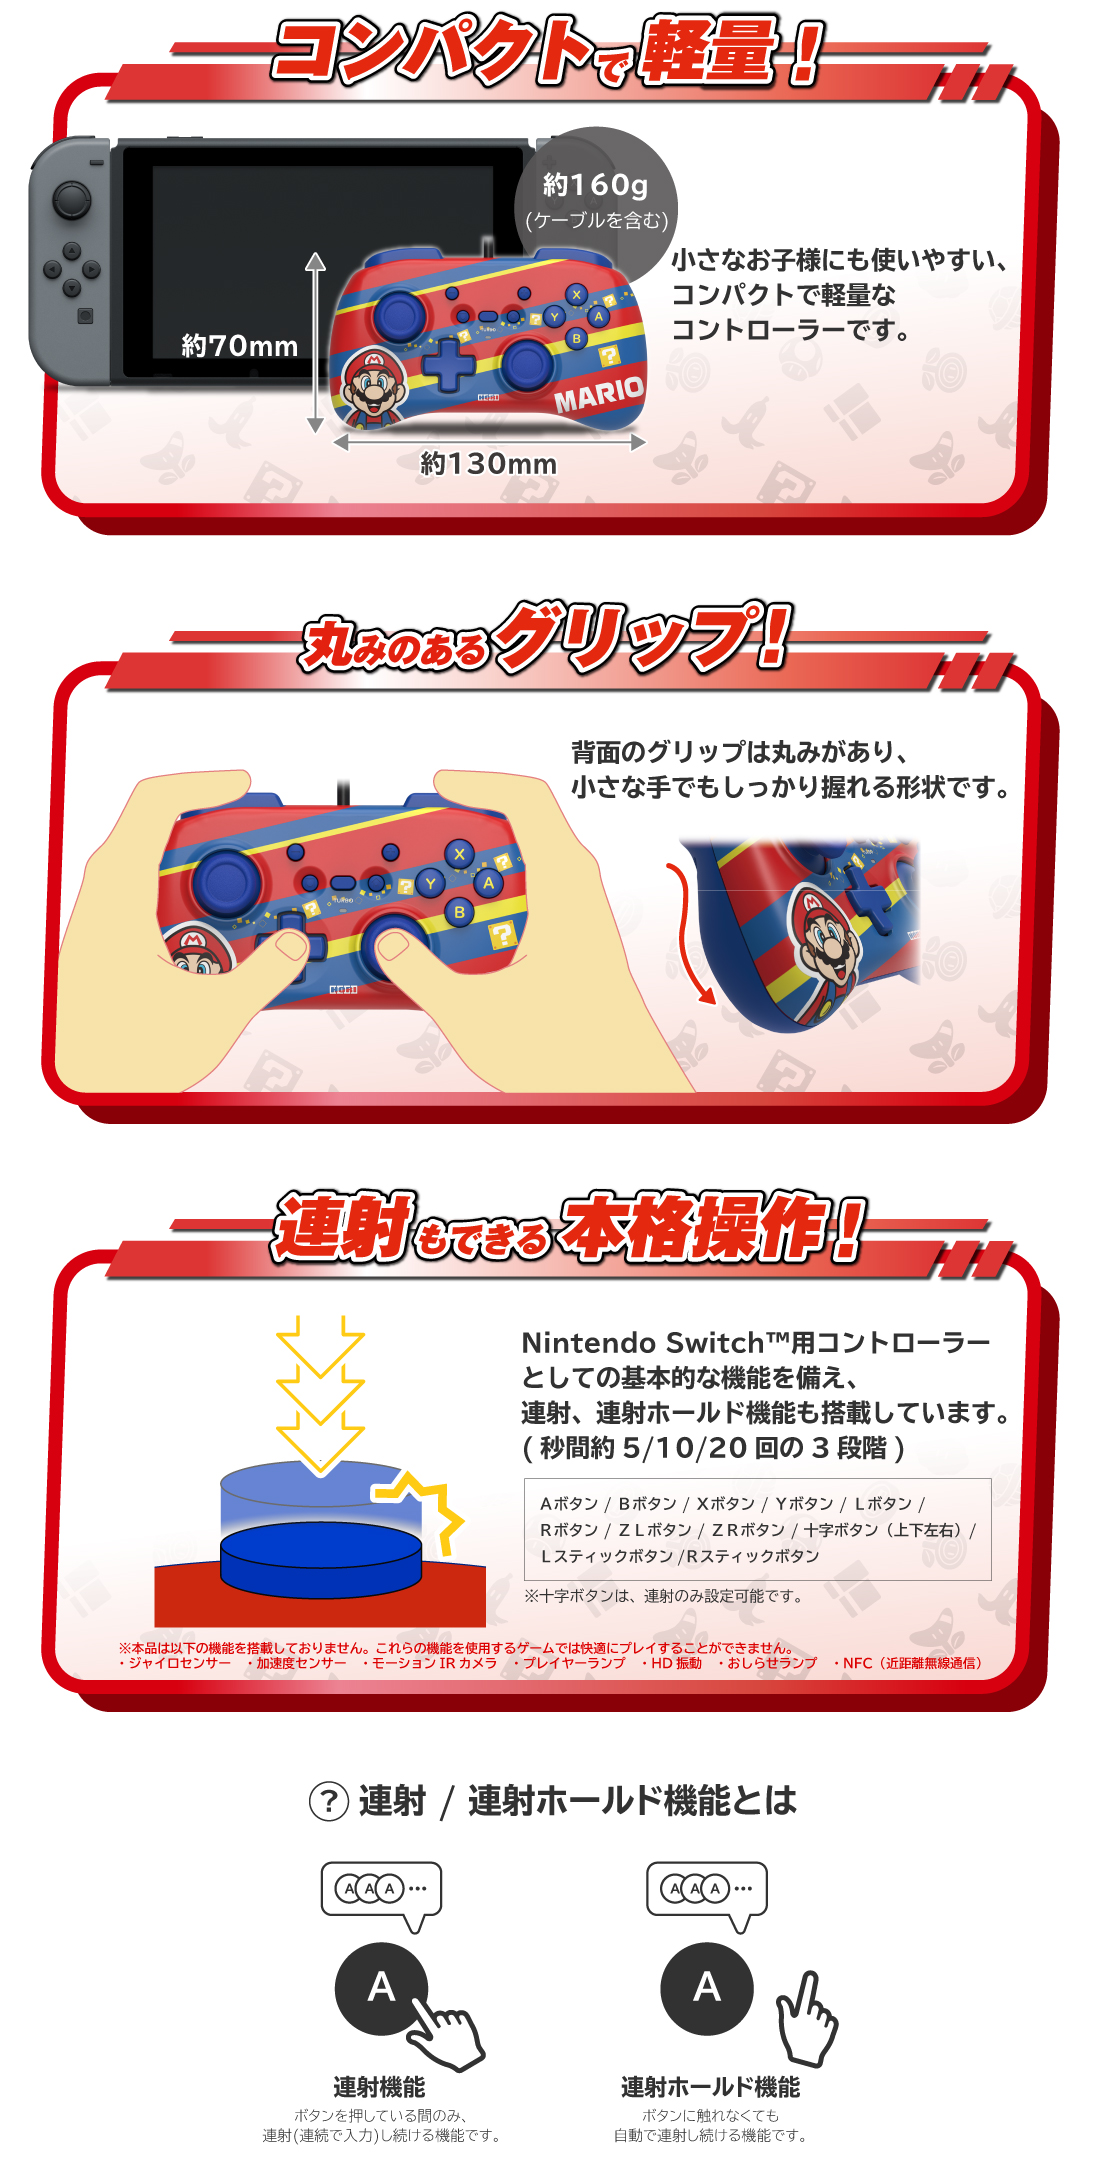 株式会社 HORI | スーパーマリオ ホリパッド ミニ for Nintendo Switch